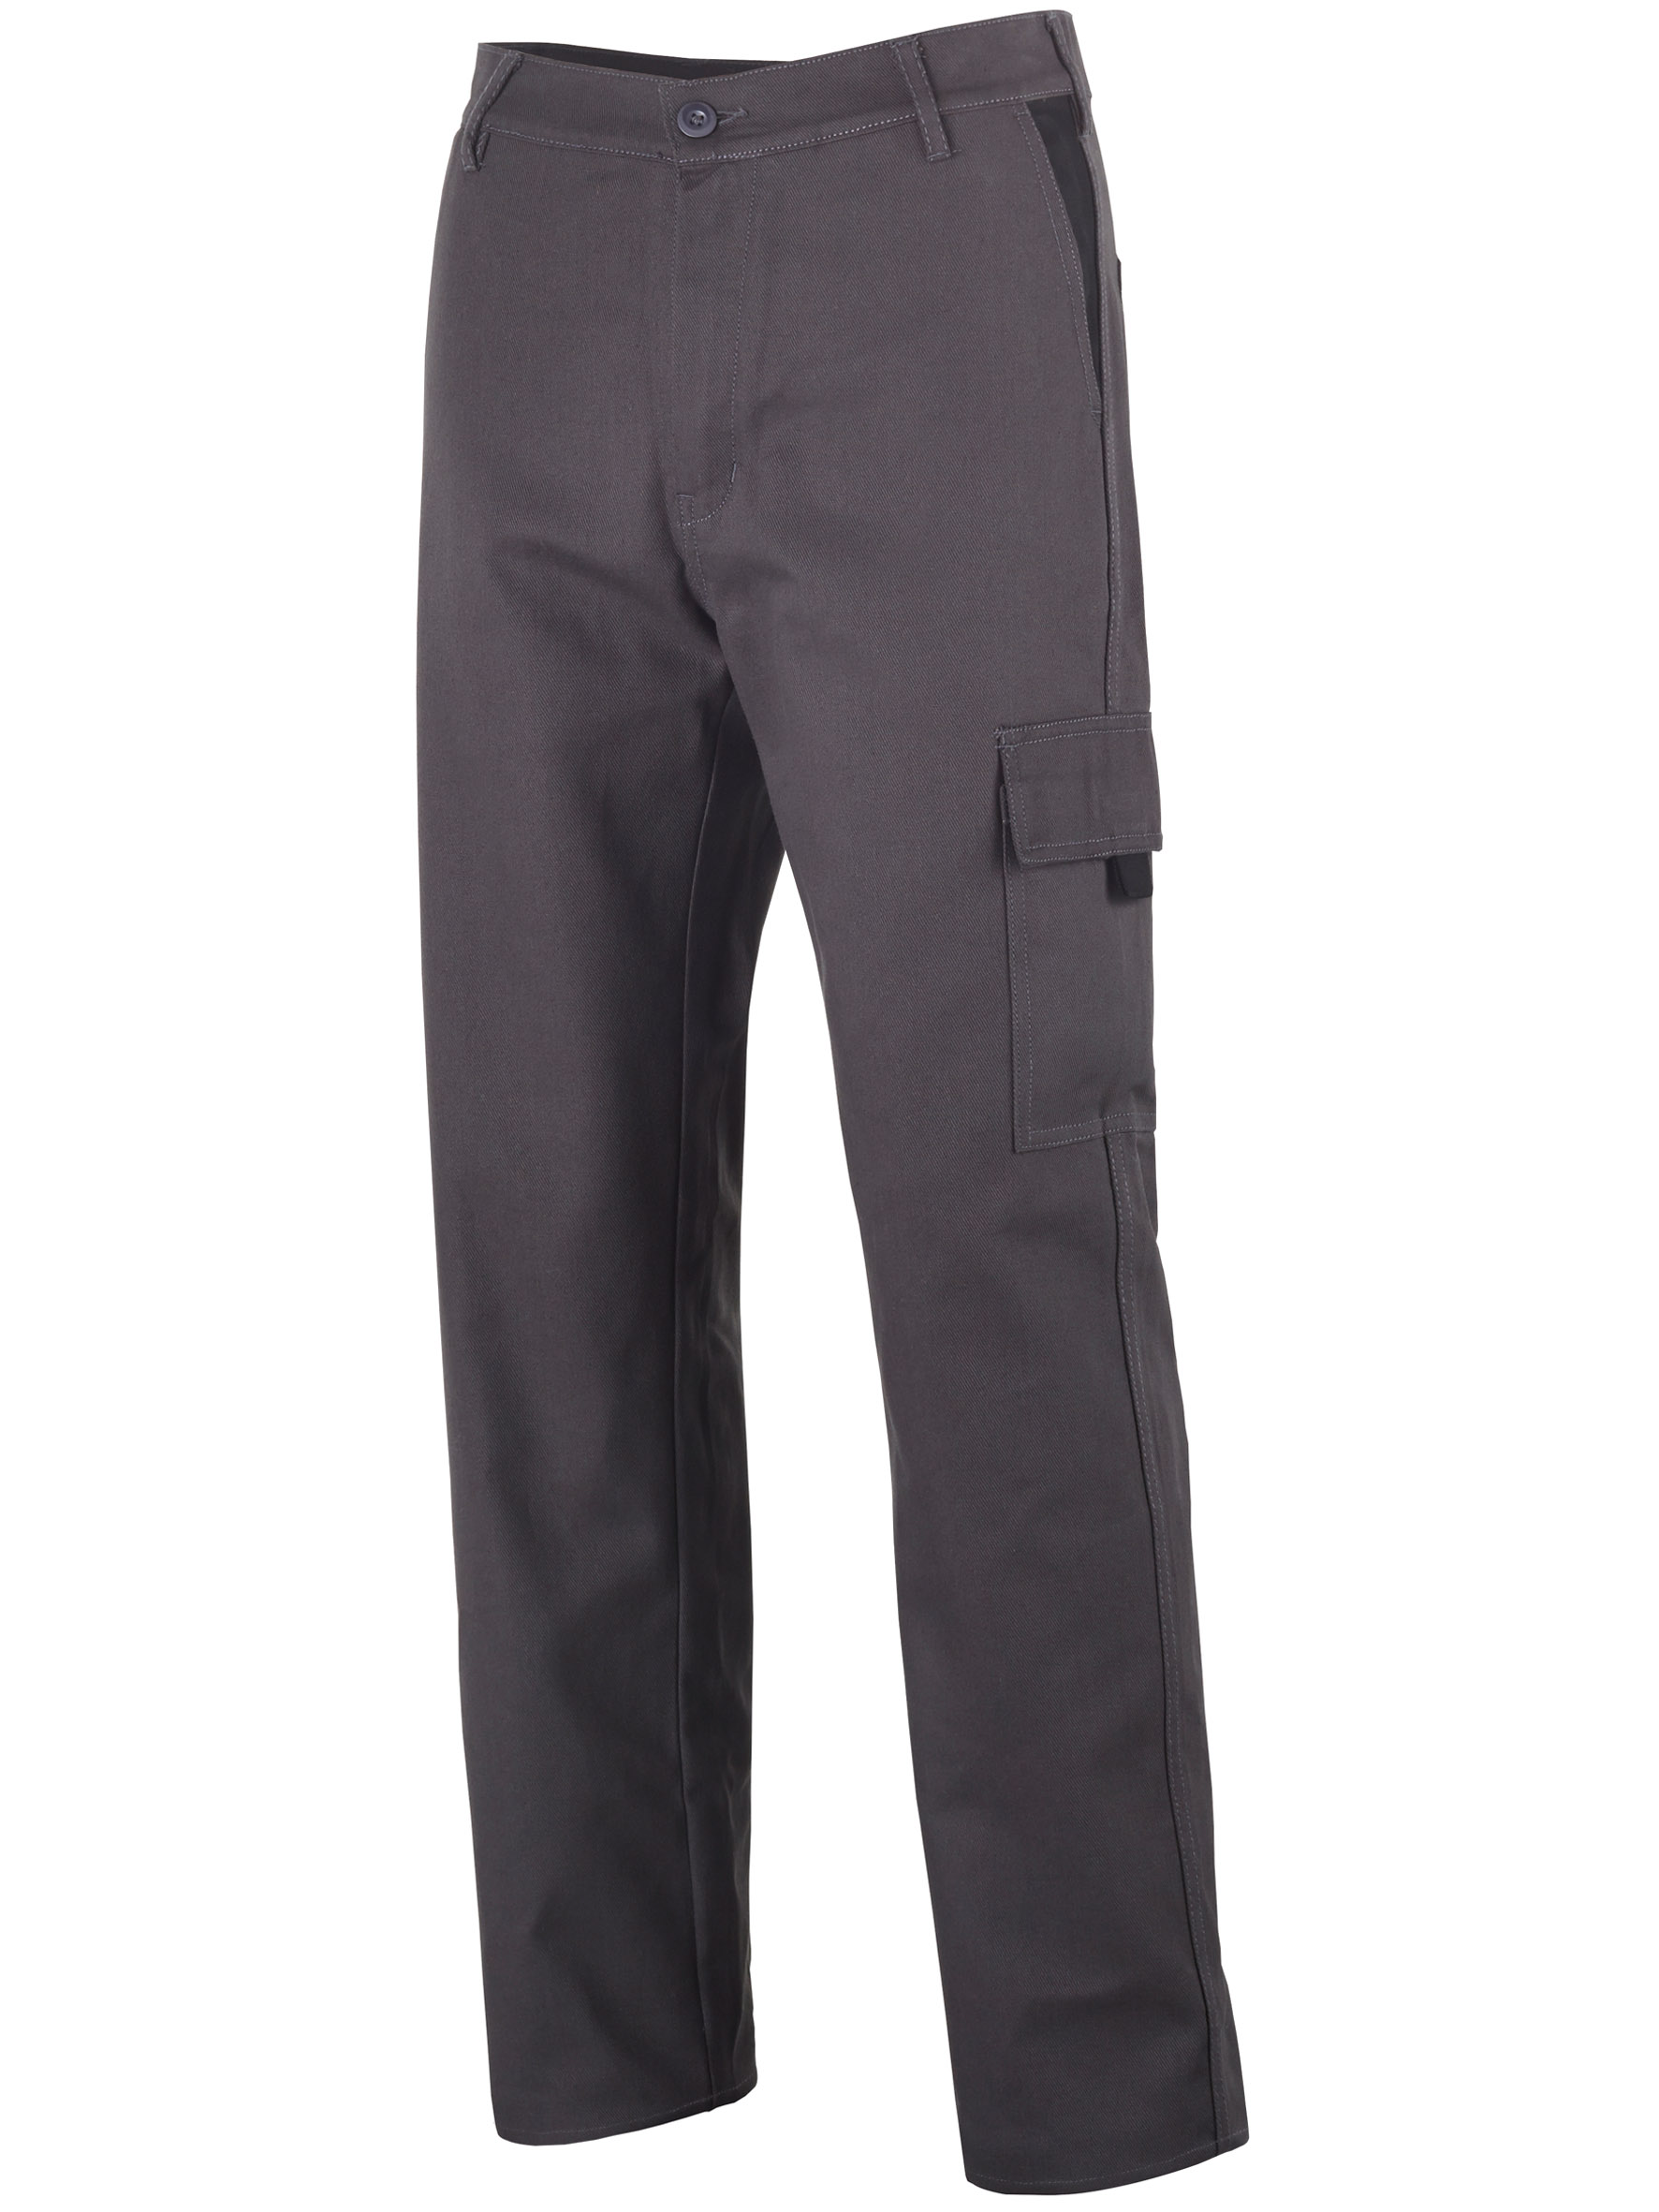 Articulo Pantalón de trabajo. 100% algodón. 300g/m². Cinza/ preto.